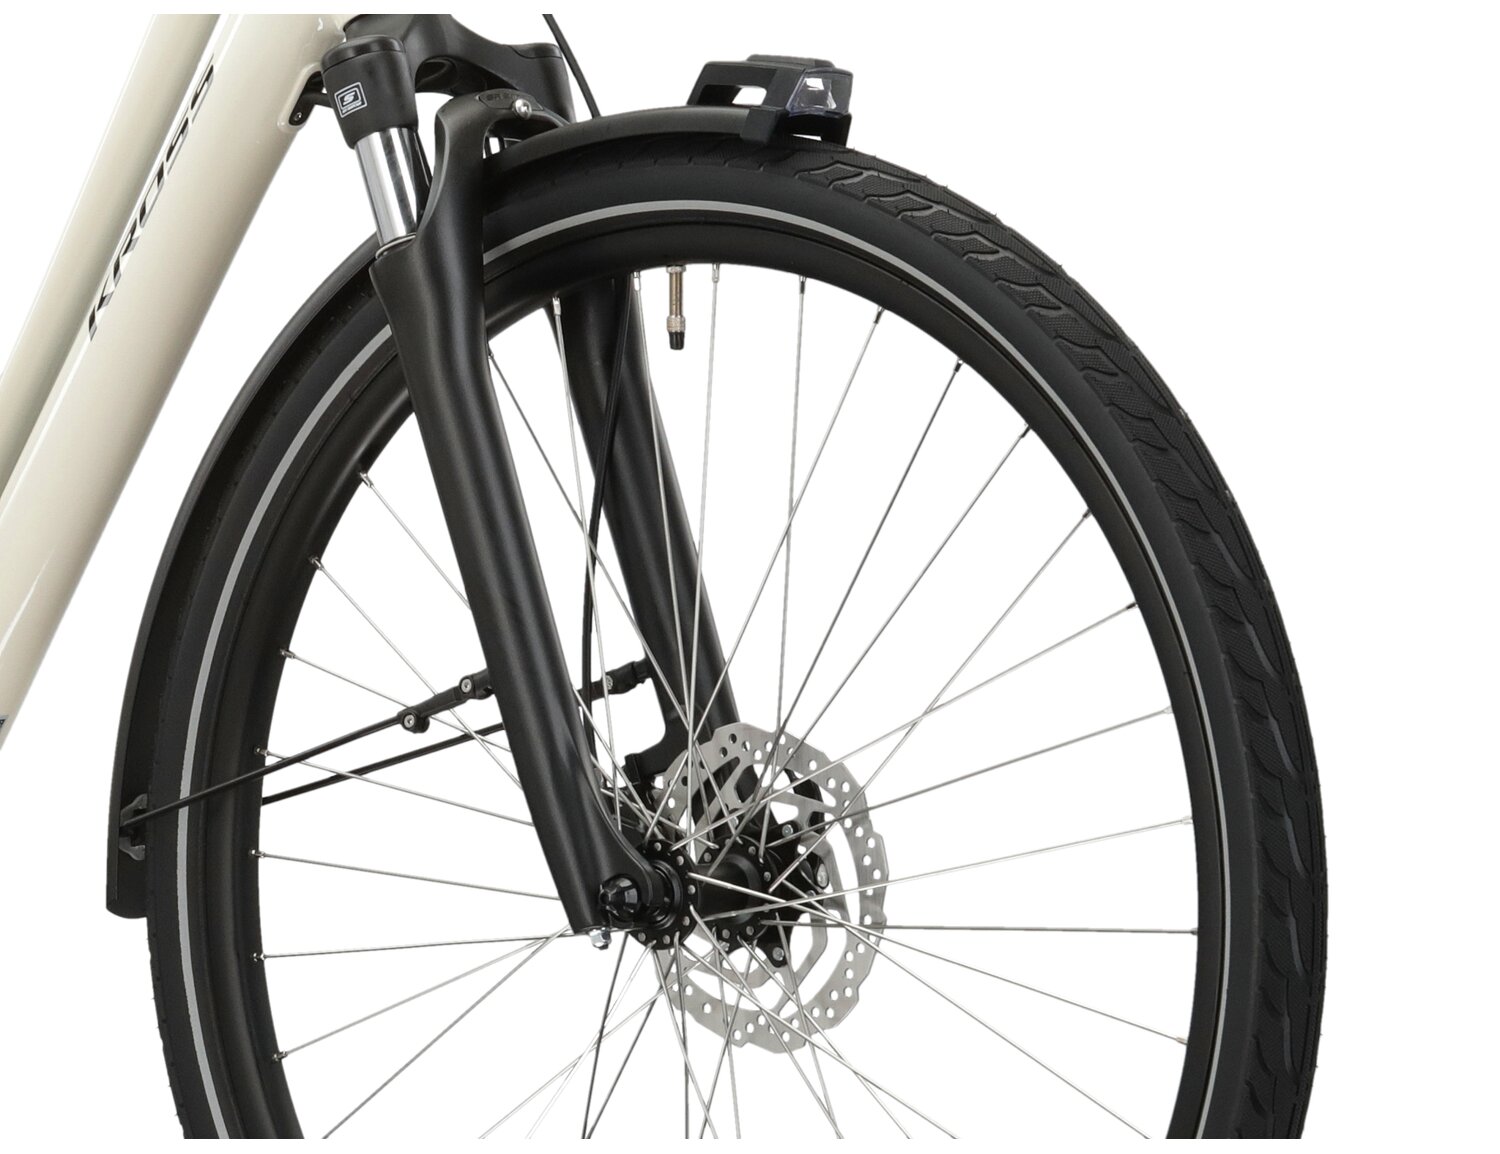 Aluminowa rama, amortyzowany widelec SR SUNTOUR NEX E25 o skoku 50mm oraz opony w elektrycznym rowerze miejskim Ebike City KROSS Sentio Hybrid 3.0 418 Wh UNI 